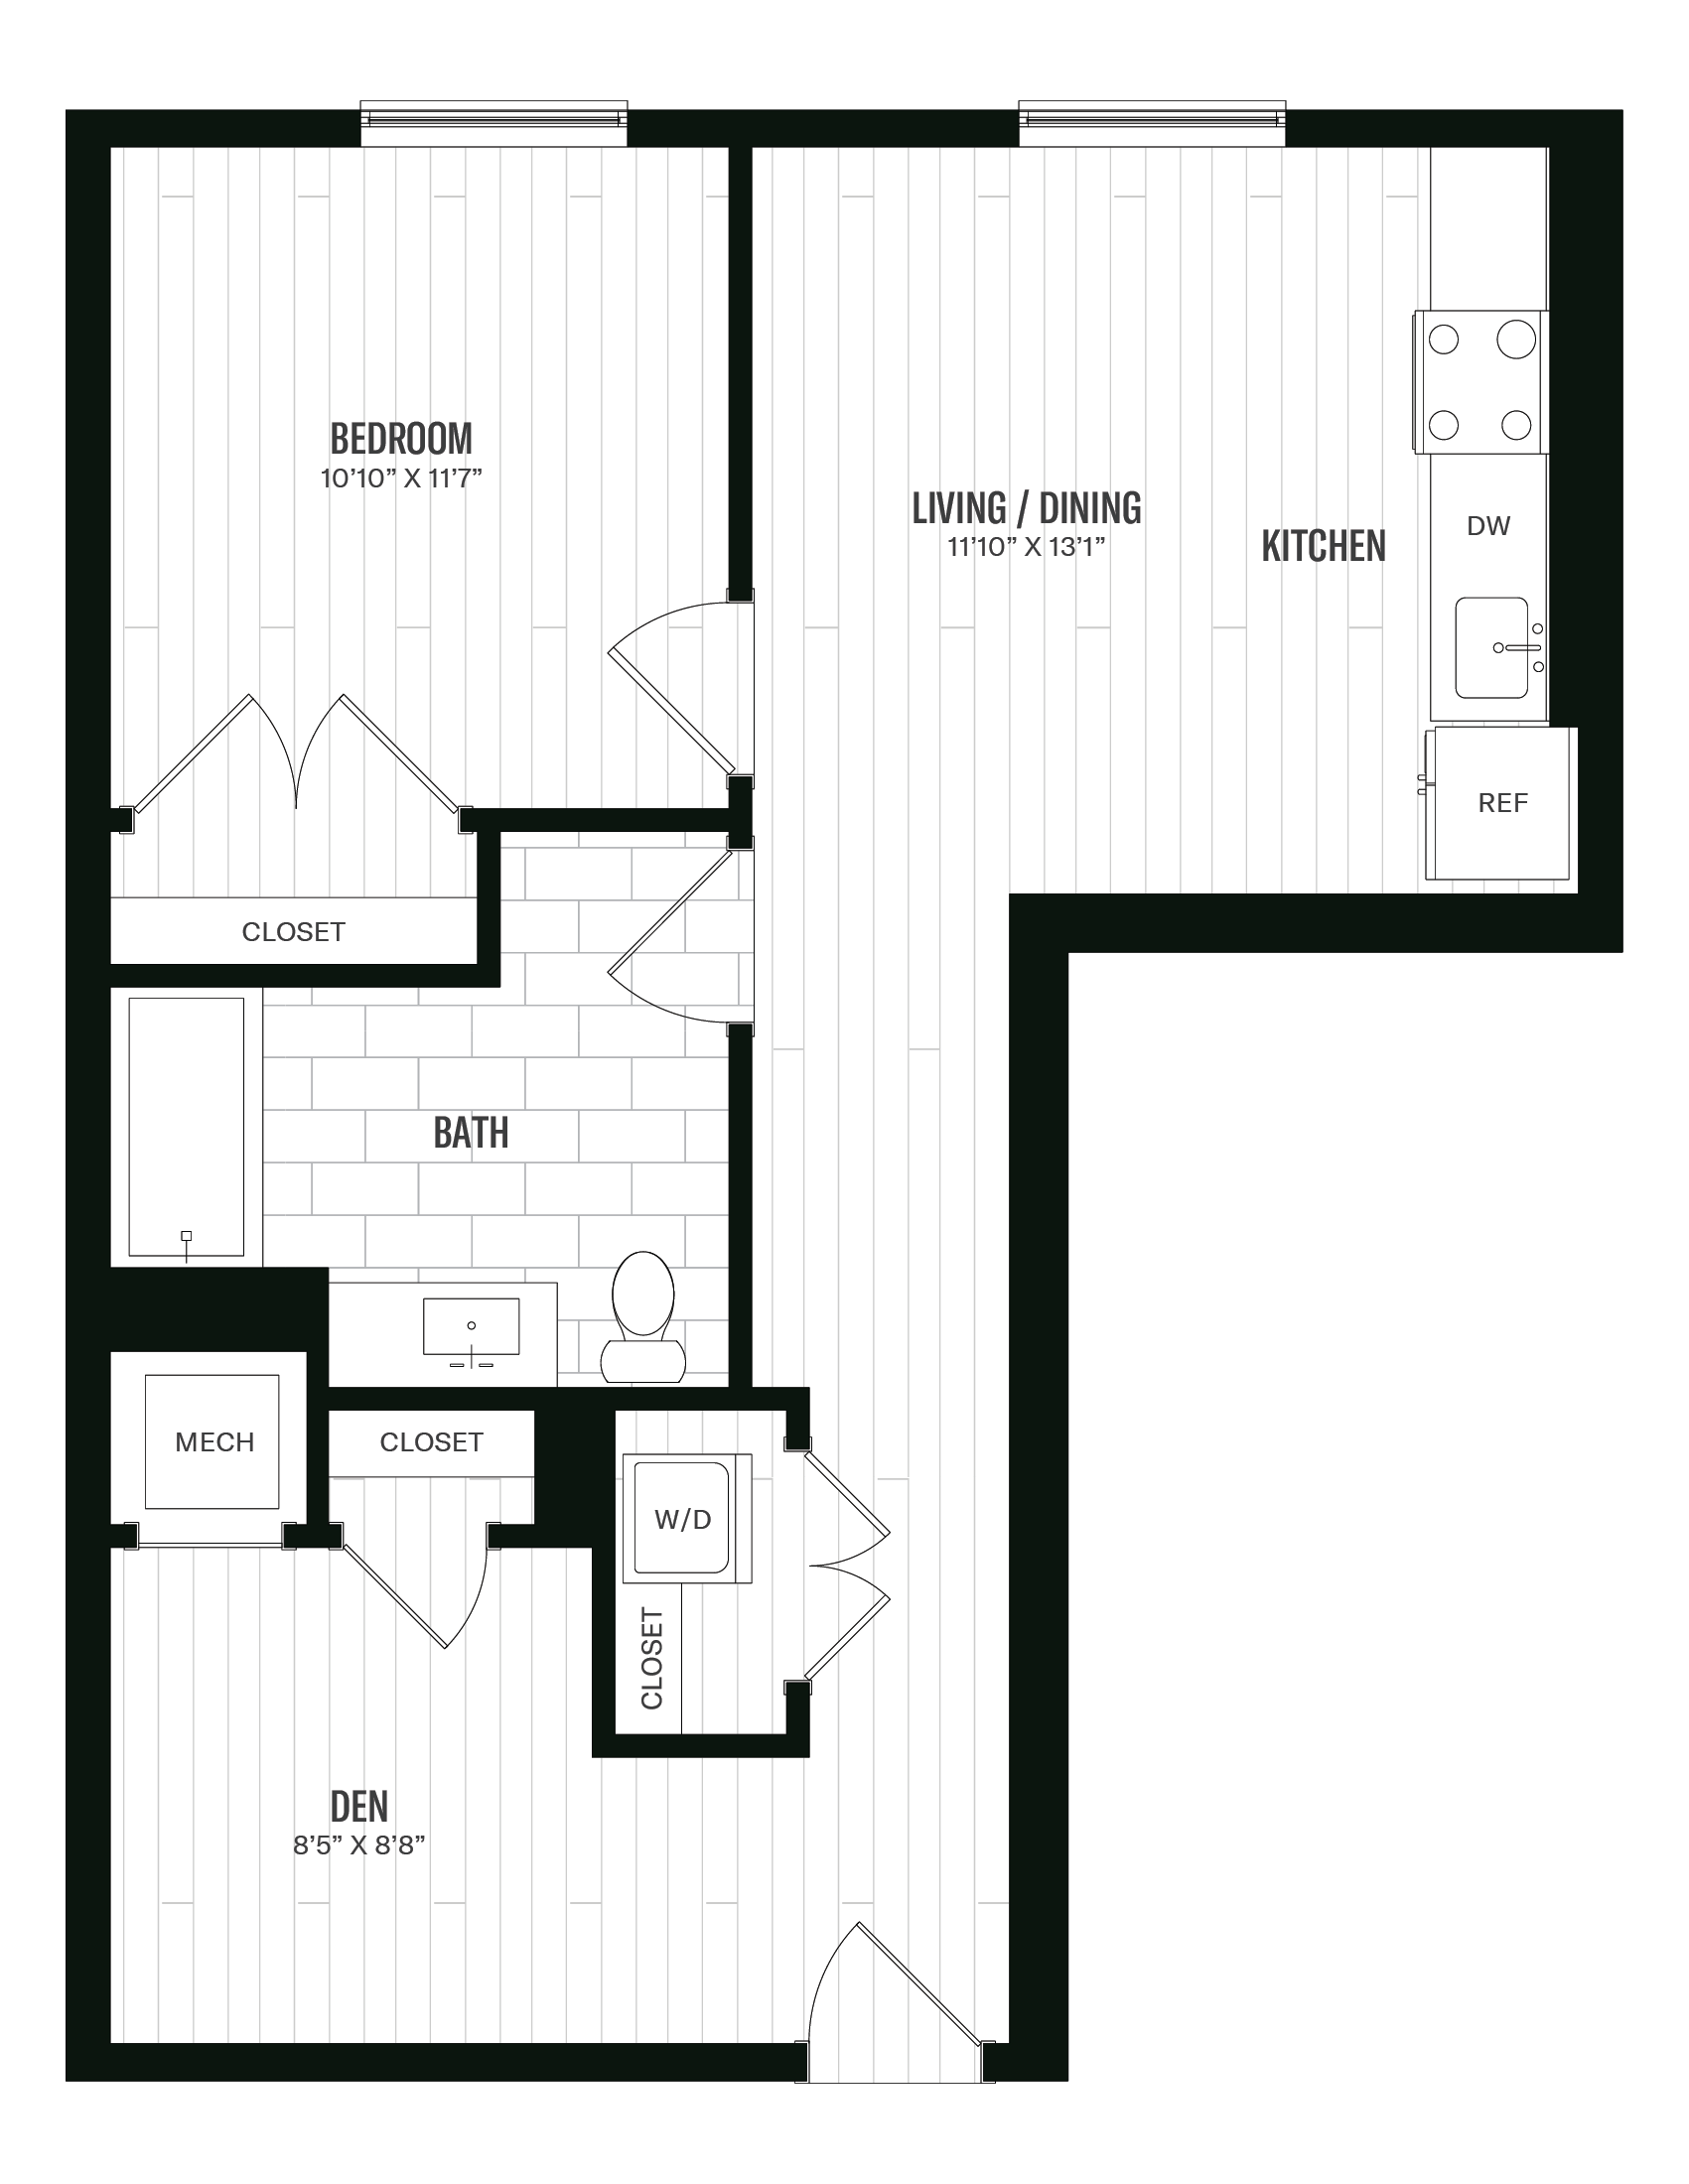 Floorplan image of unit 564